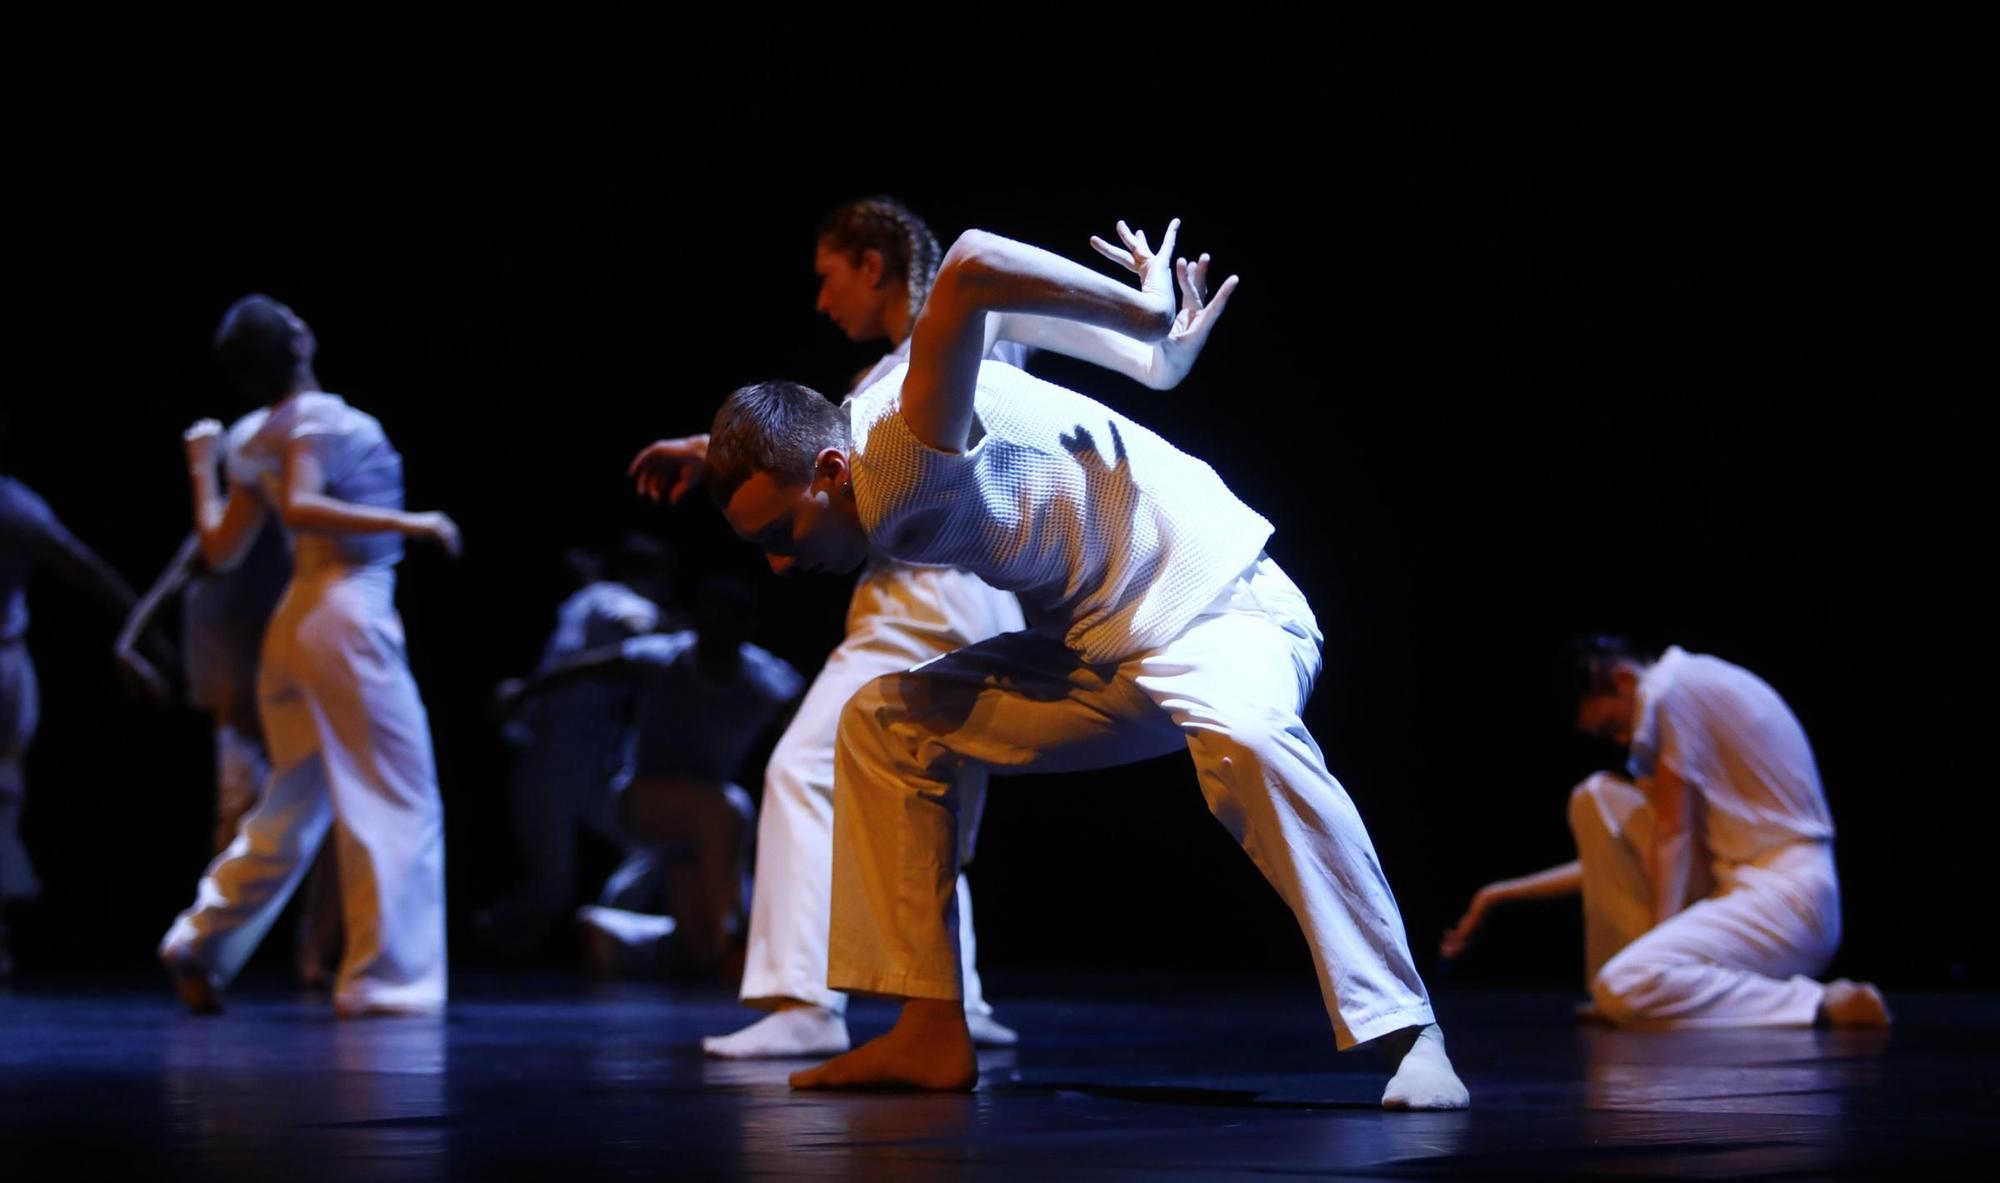 En imágenes | Espectáculo de danza "El Hilo Rojo" en el Palacio de Congresos de Zaragoza